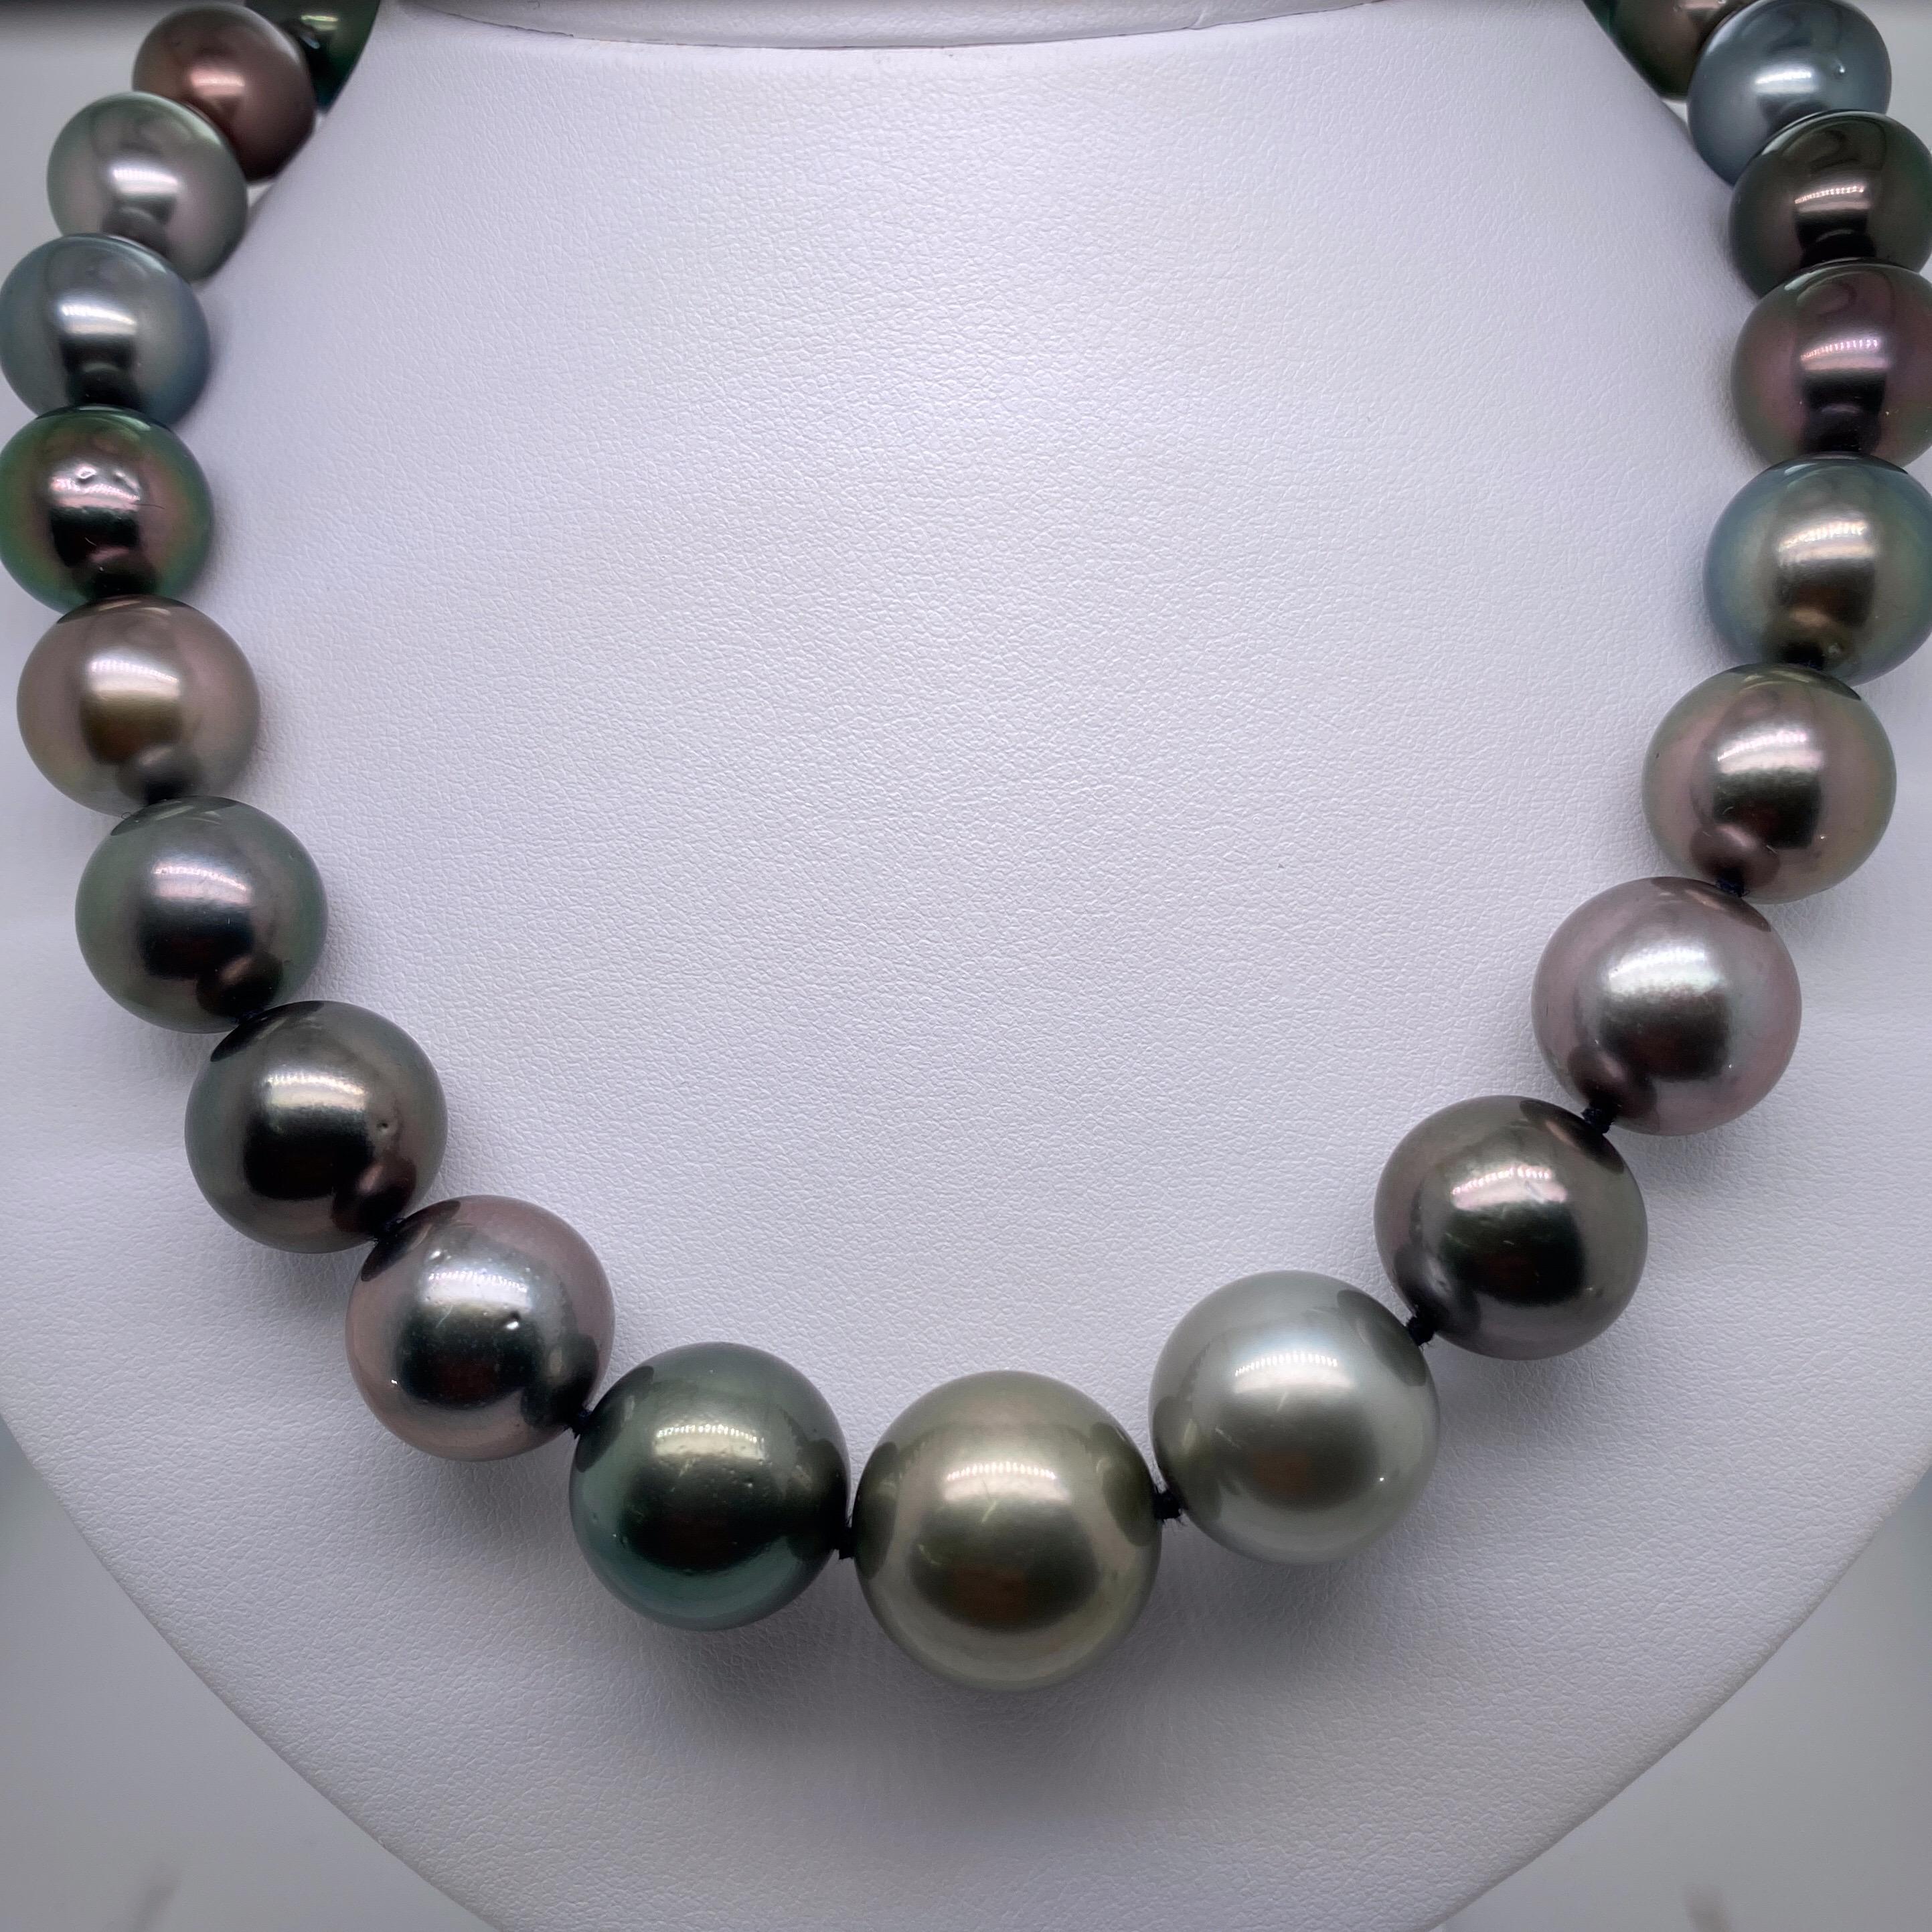 Ein wunderschönes Collier aus 29 Tahiti-Perlen mit einem Zentrum aus dunklen Perlen, die einem Ombre-Look aus mittleren bis helleren Grautönen folgen, und einem hochglänzenden durchbrochenen Kugelverschluss. Perfekt aufeinander abgestimmt!

Qualität